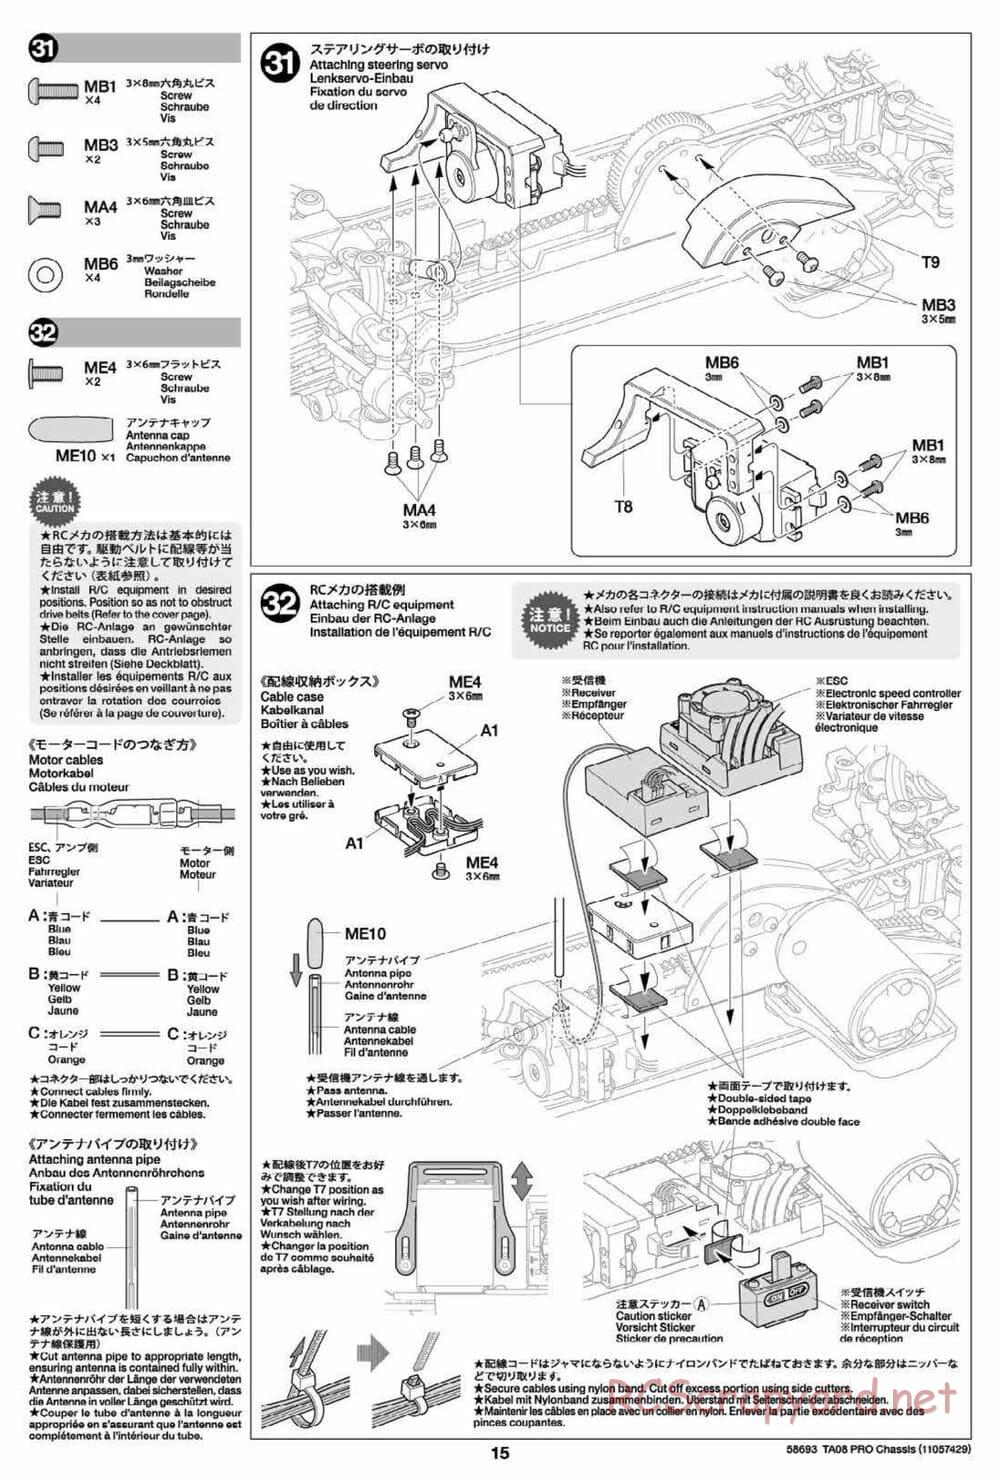 Tamiya - TA08 Pro Chassis - Manual - Page 15